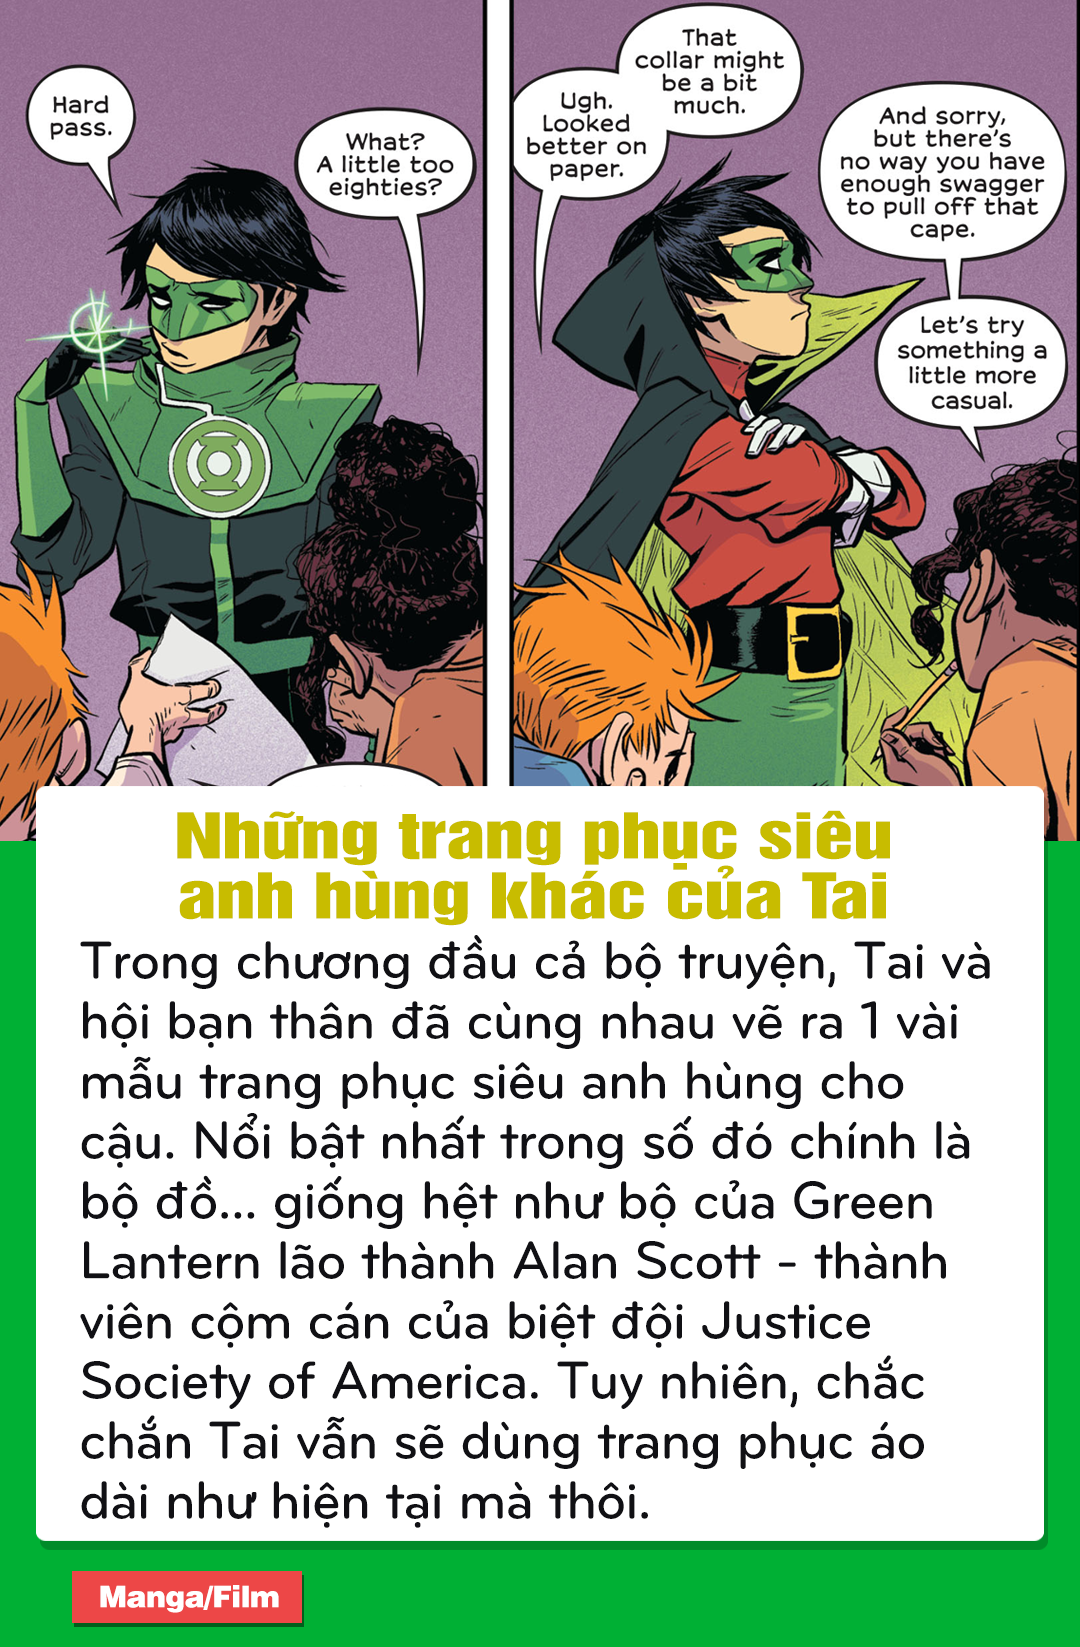 DC Comics: Điểm lại những chi tiết thú vị trong bộ truyện về siêu anh hùng Green Lantern người Việt - Tài Phạm - Ảnh 9.